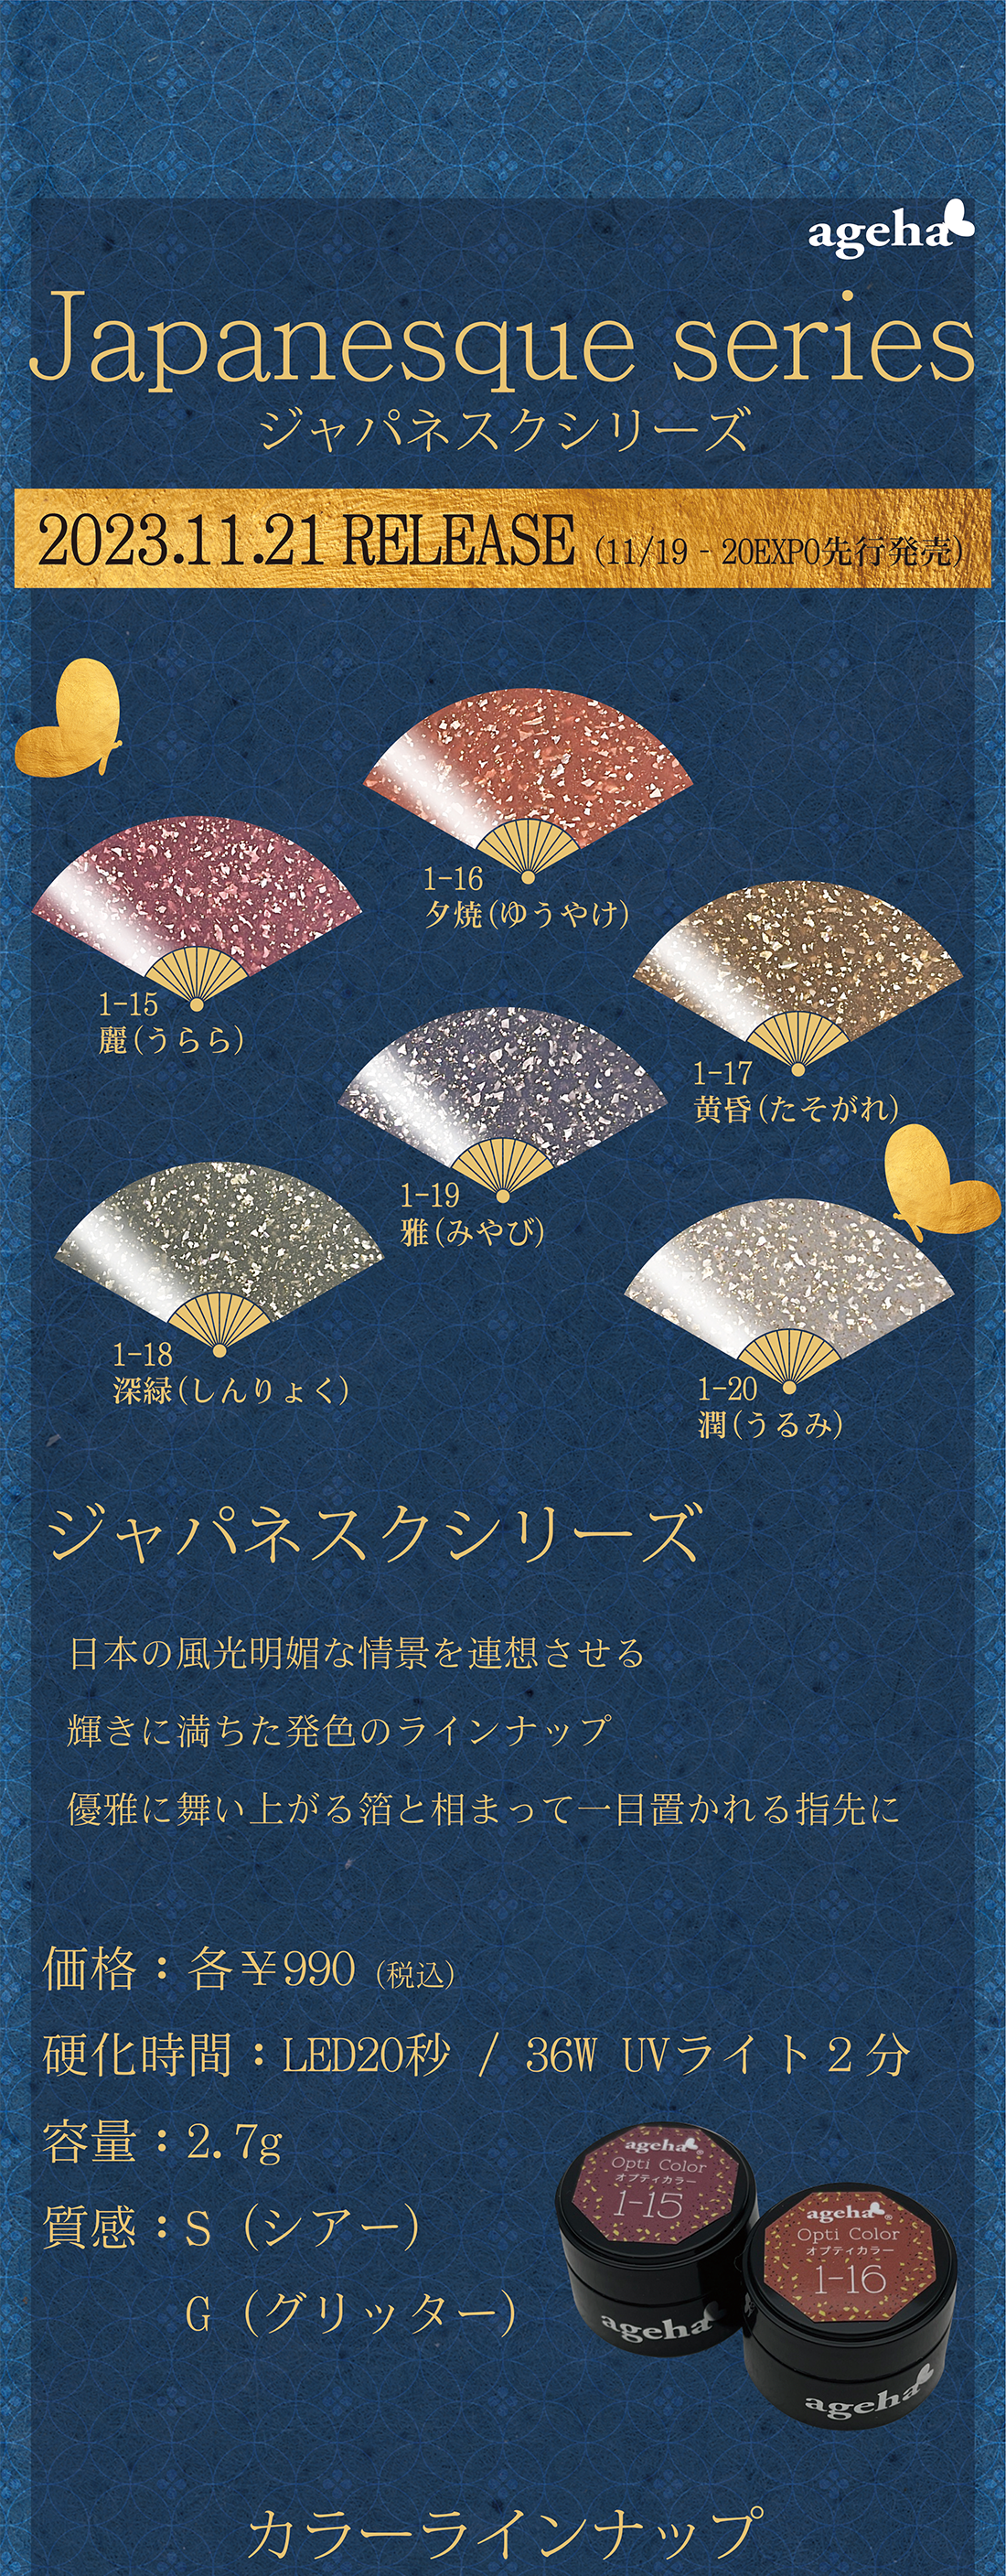 ジャパネスクシリーズ 日本の風光明媚な情景を連想させる輝きに満ちた発色のラインナップ優雅に舞い上がる箔と相まって一目置かれる指先に 各¥990(税込) 容量2.7g